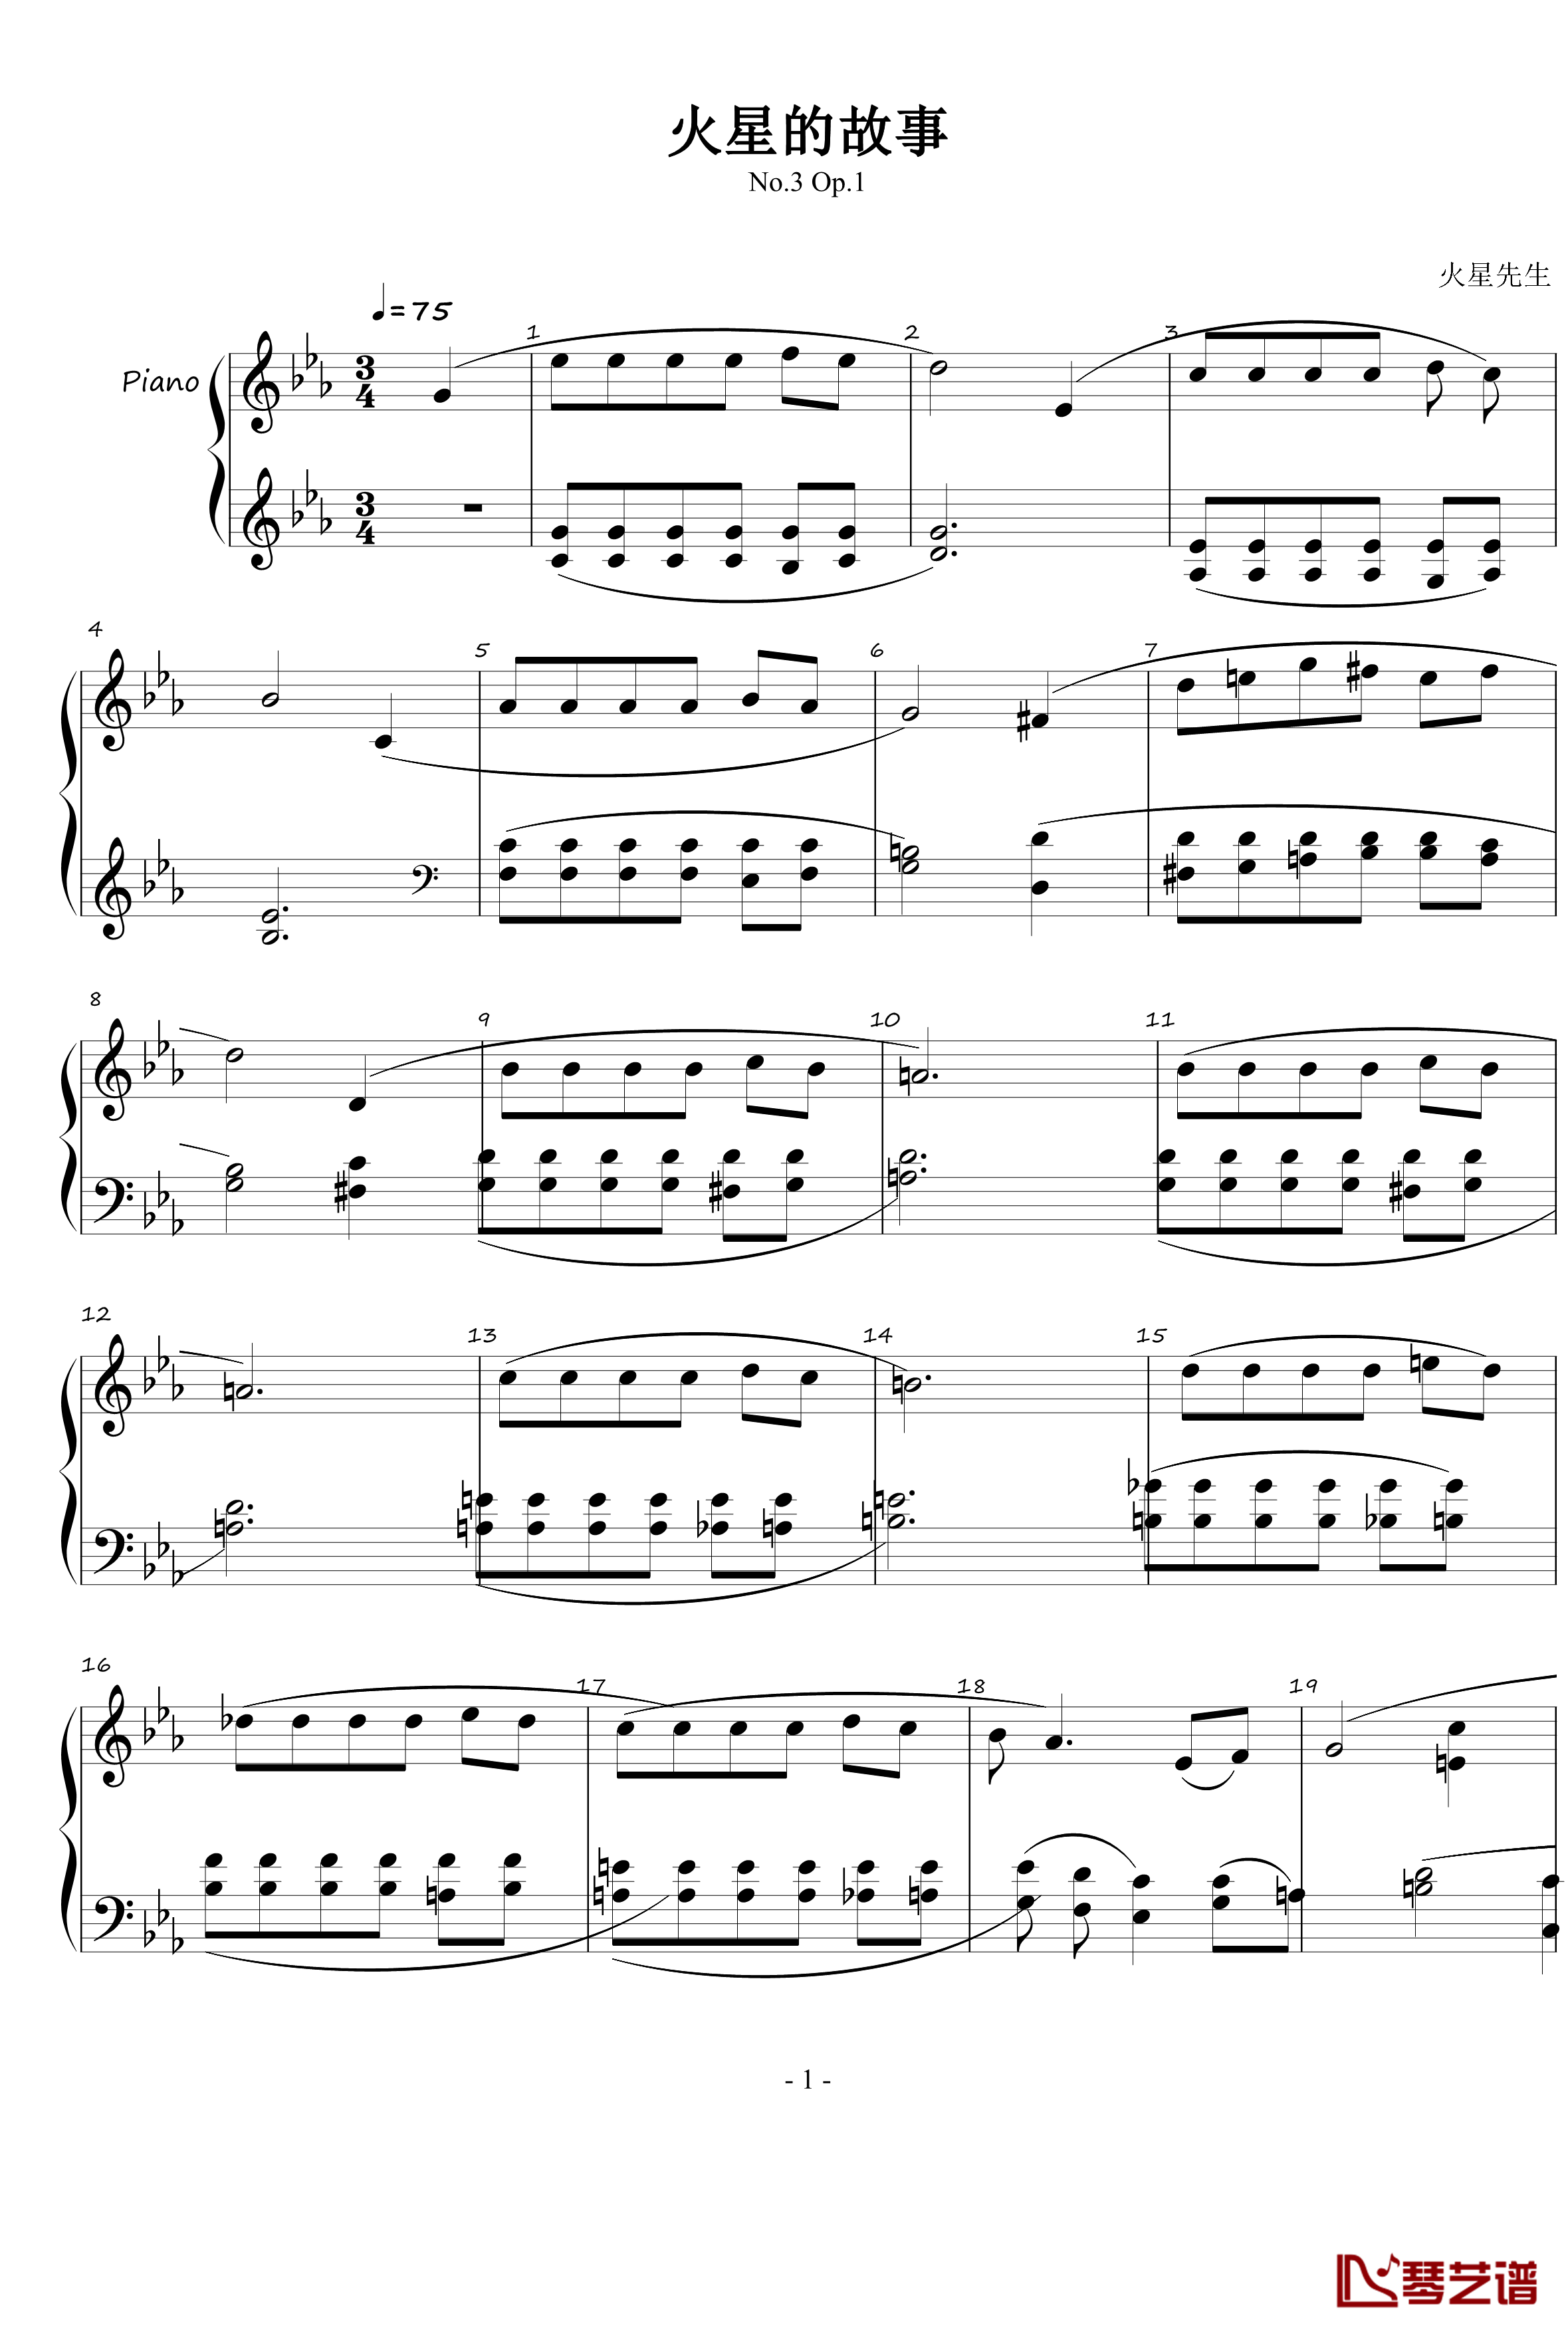 火星的故事钢琴谱-火星先生Op.3 No.11